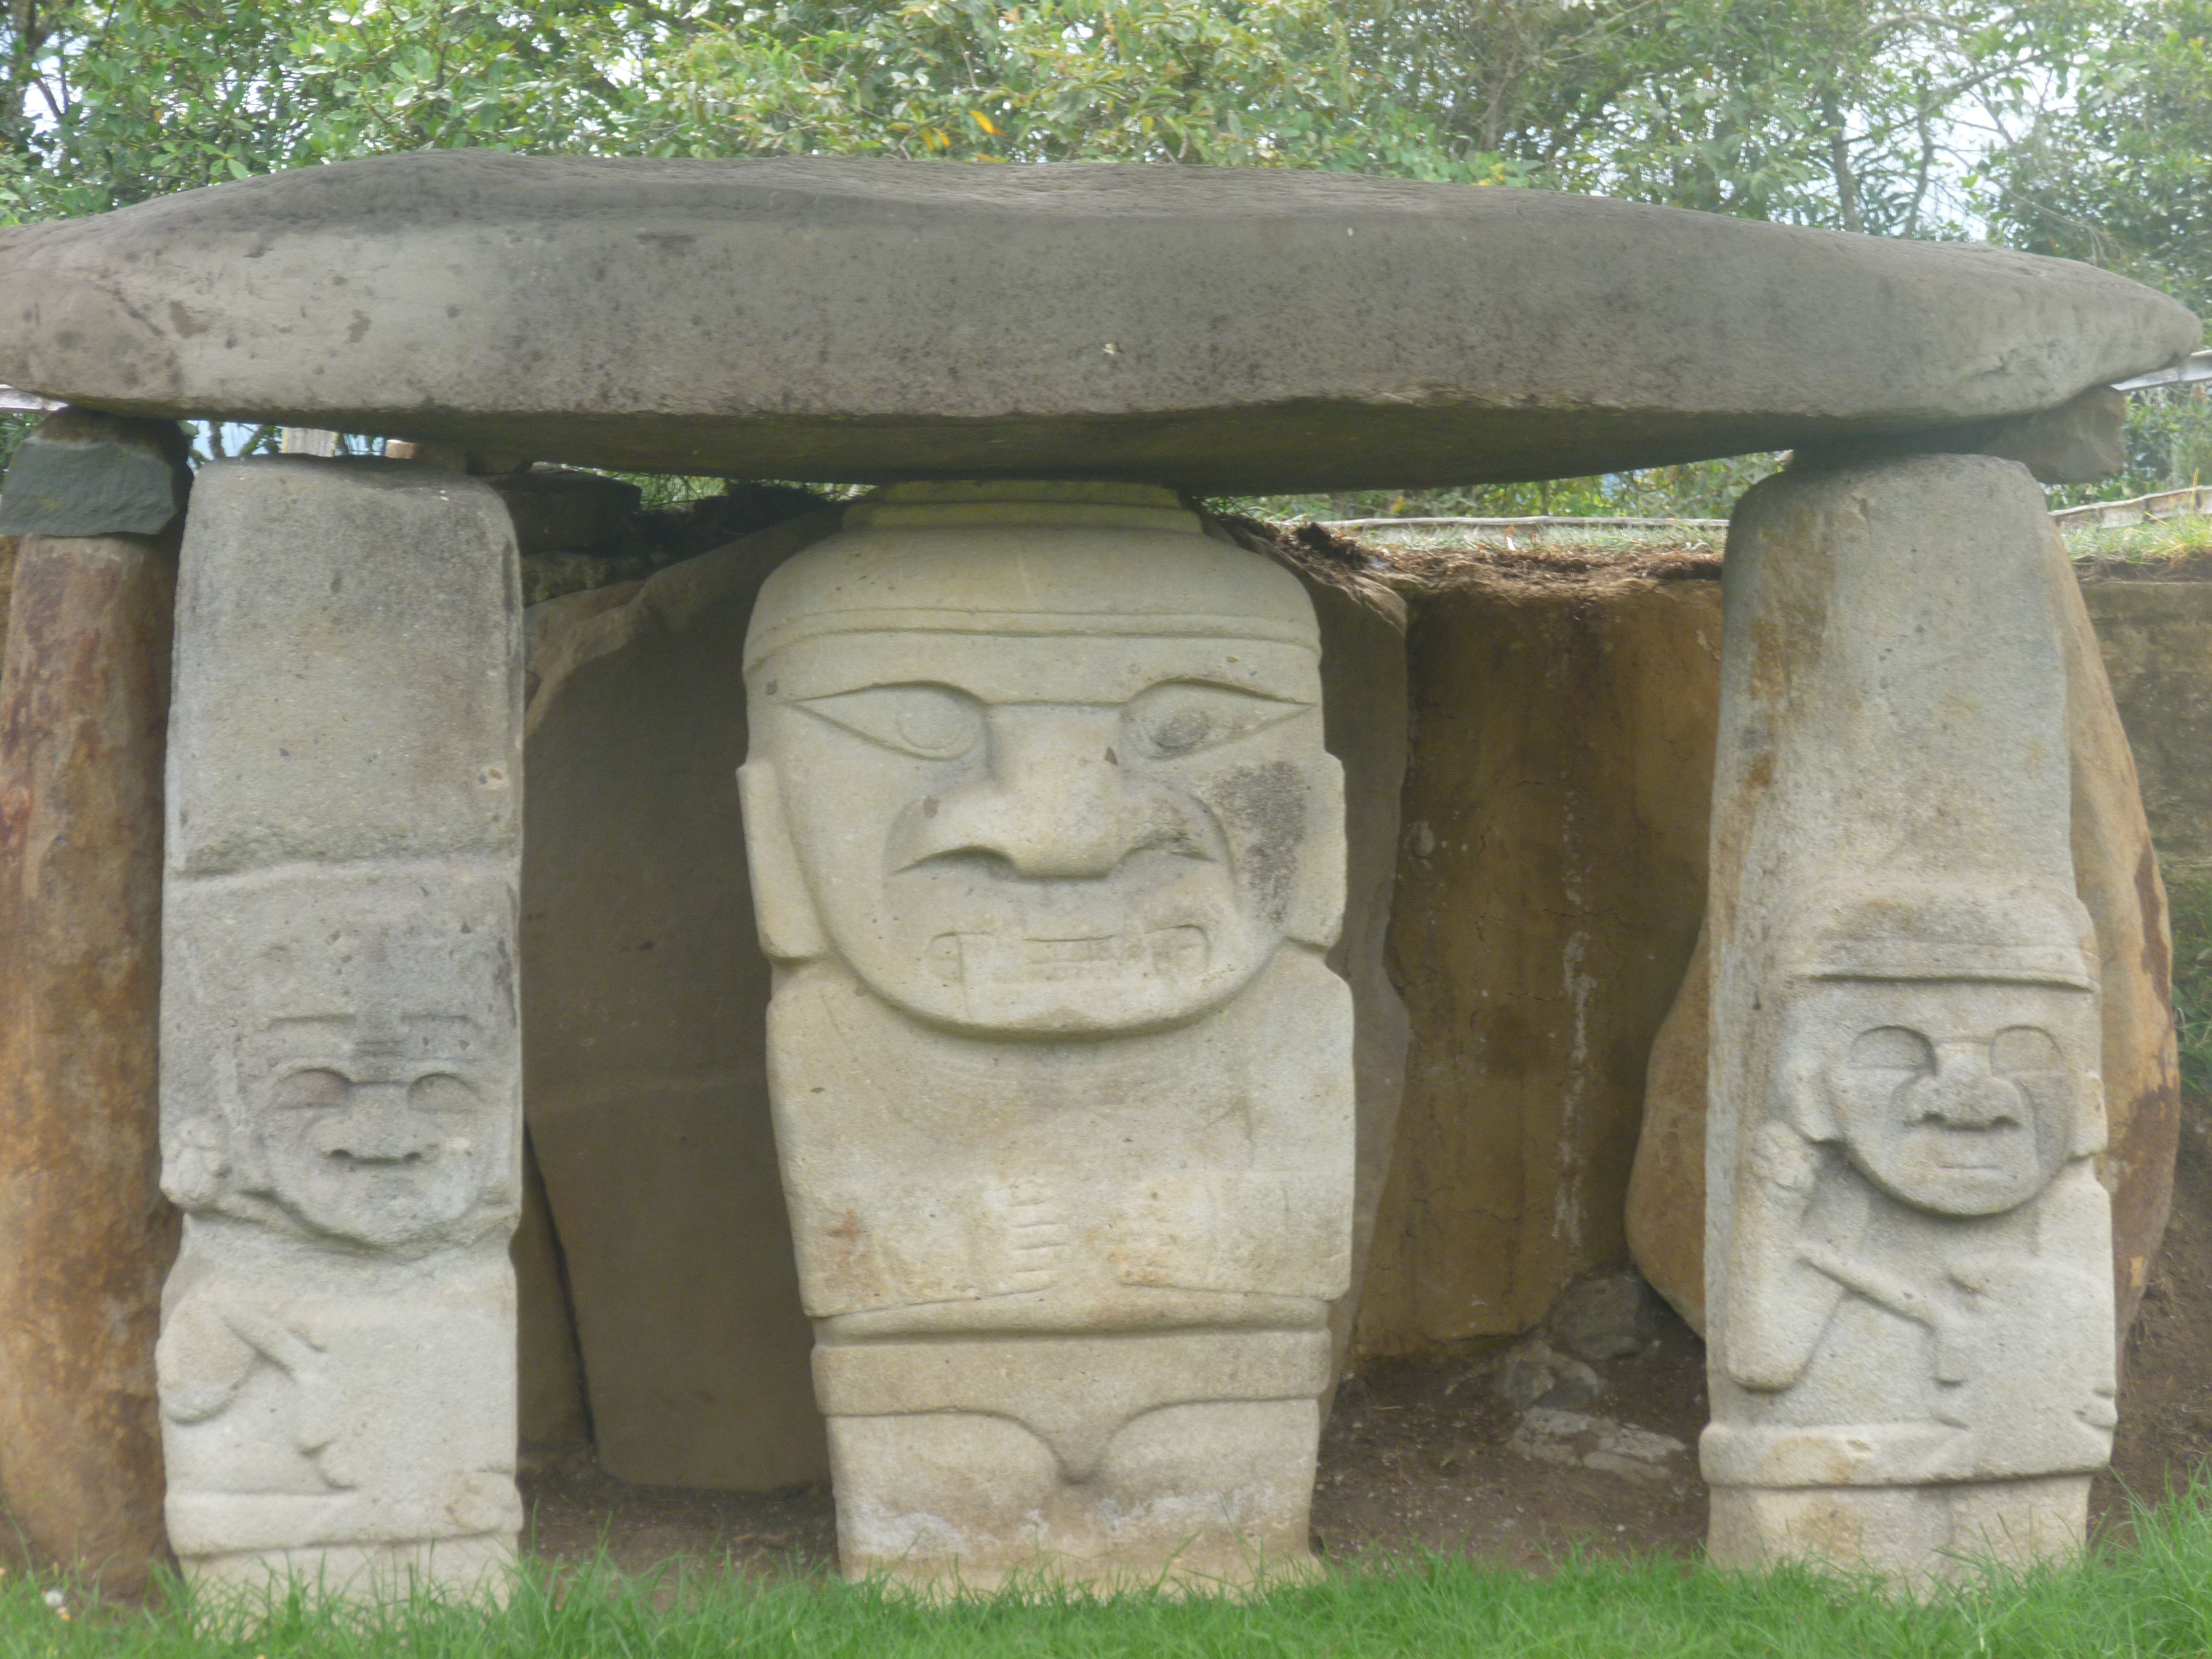 The statues at San Agustín's Parque de Arqueológico.